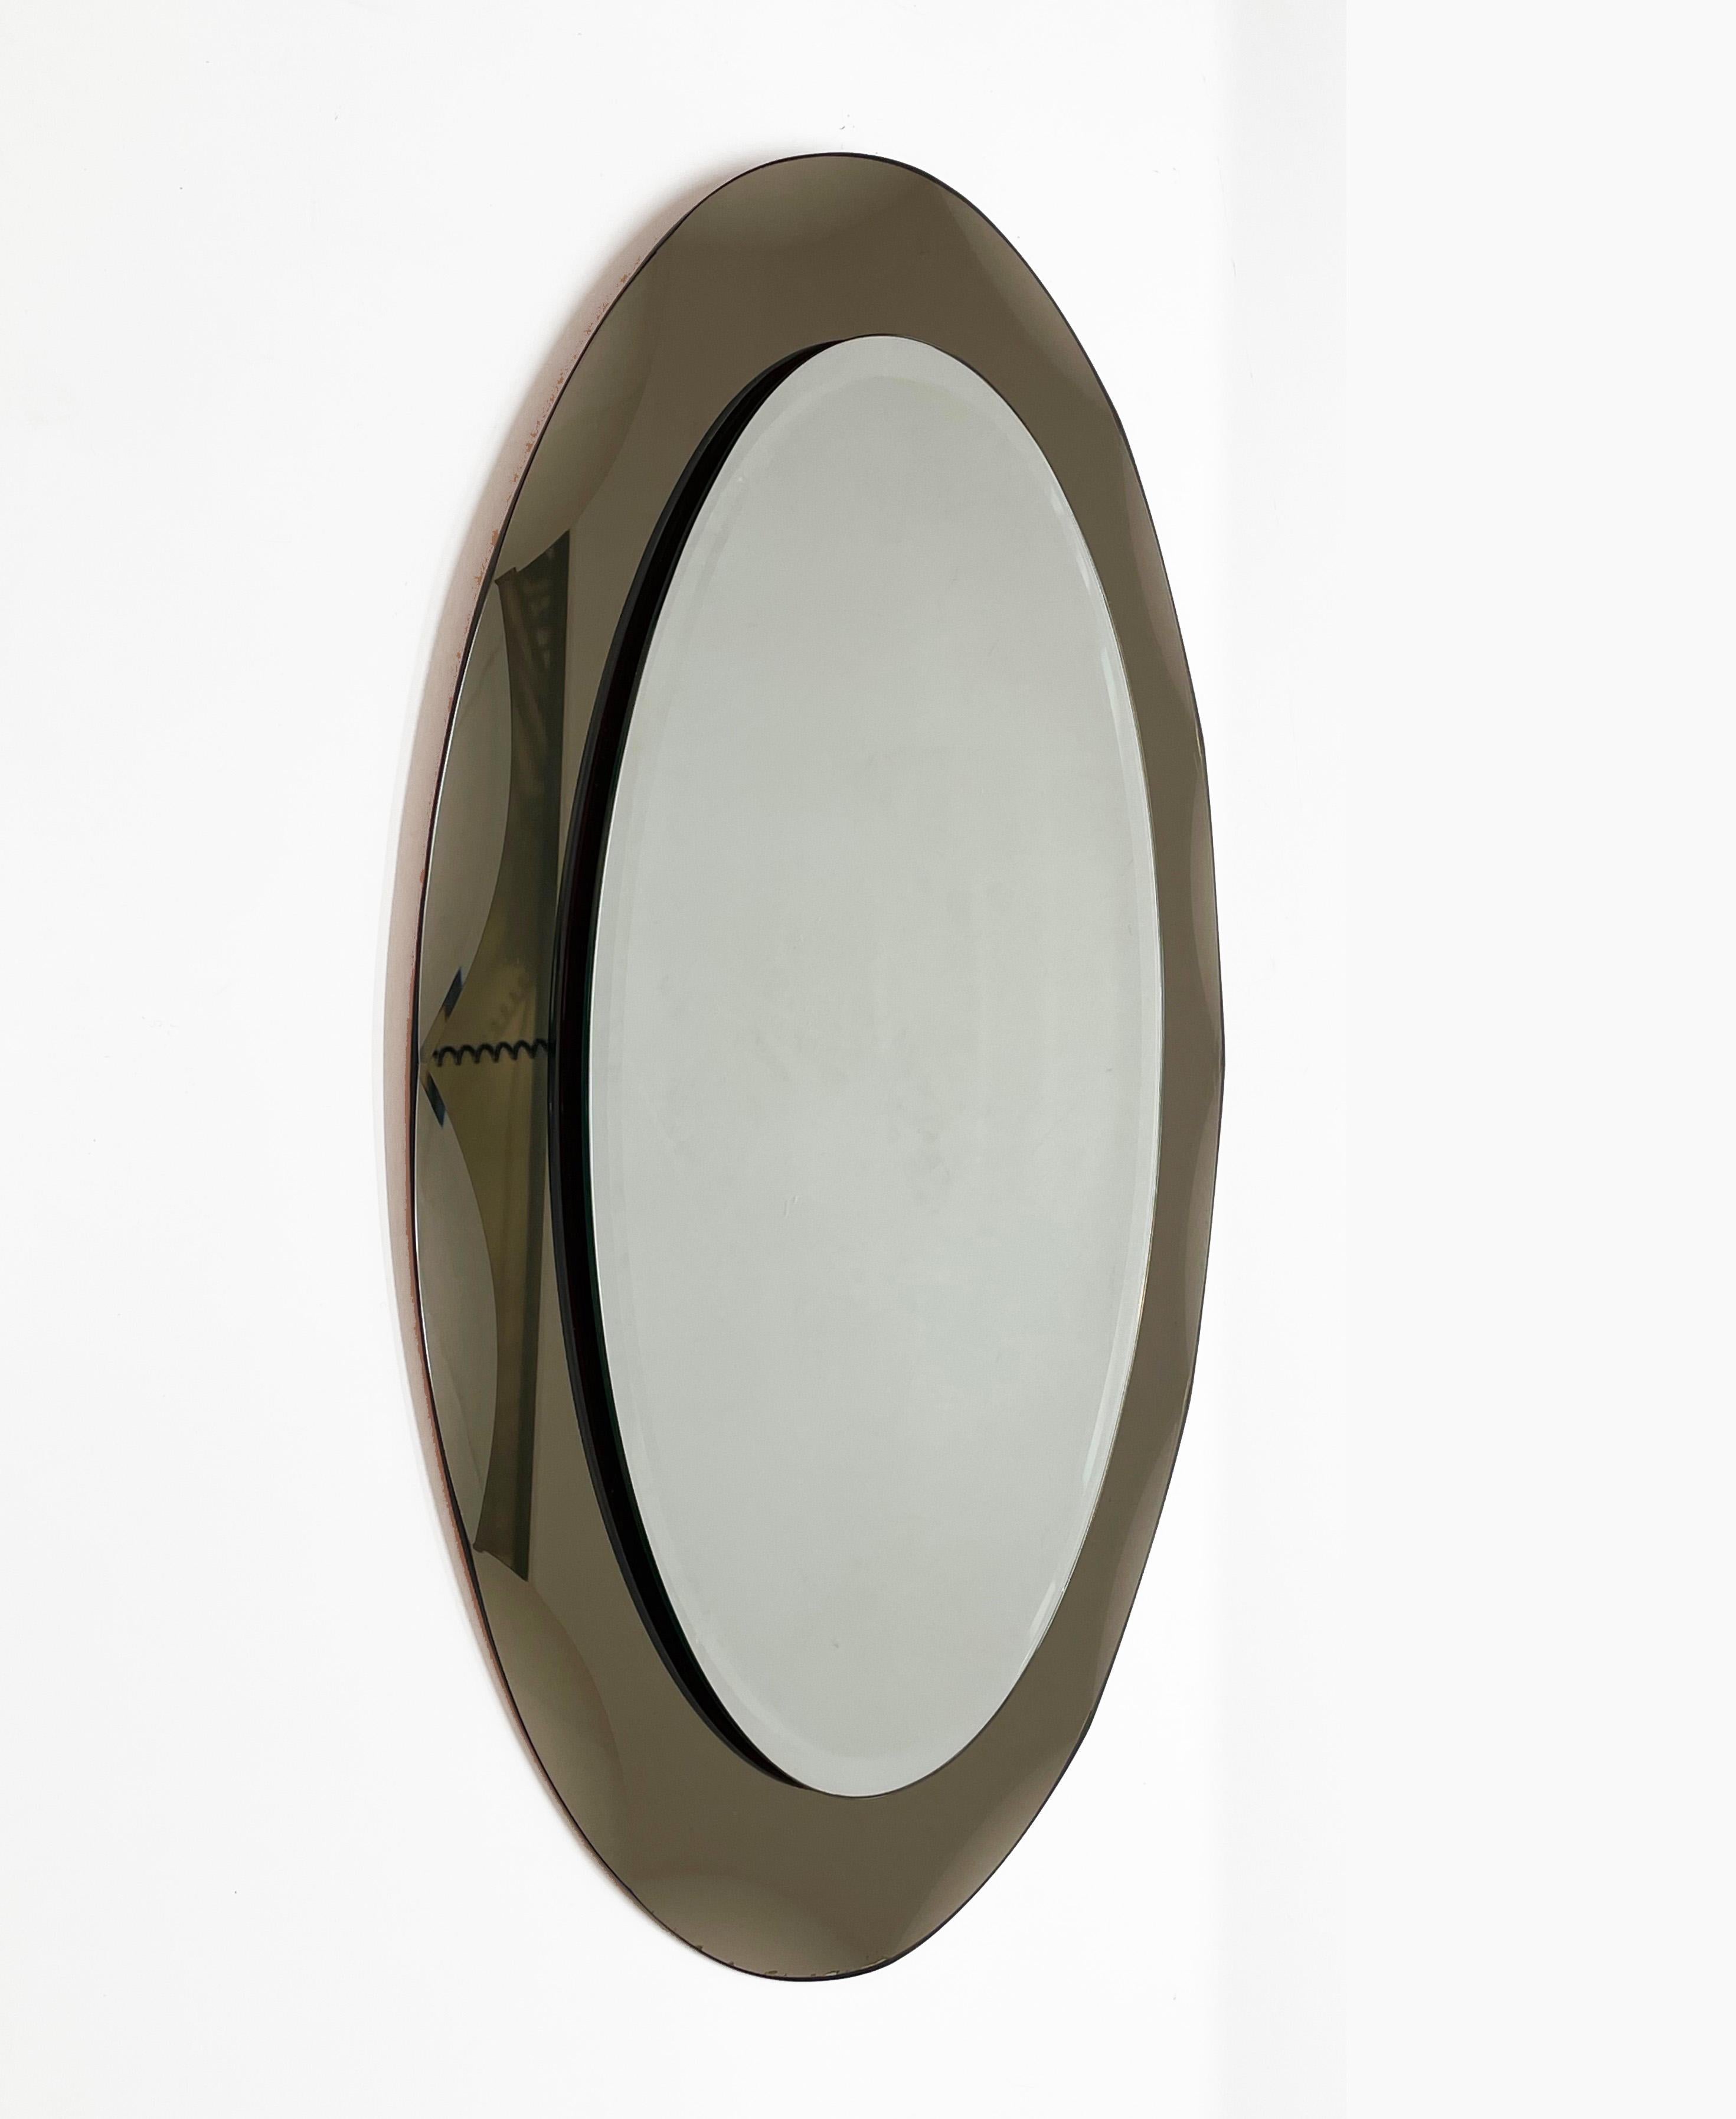 Schöner ovaler Spiegel aus der Mitte des Jahrhunderts mit bronziertem, graviertem Rahmen. Dieser Spiegel ist im Stil von Cristal Arte gehalten und wurde in den 1960er Jahren in Italien entworfen.

Dieses Stück ist ein Beispiel für eine